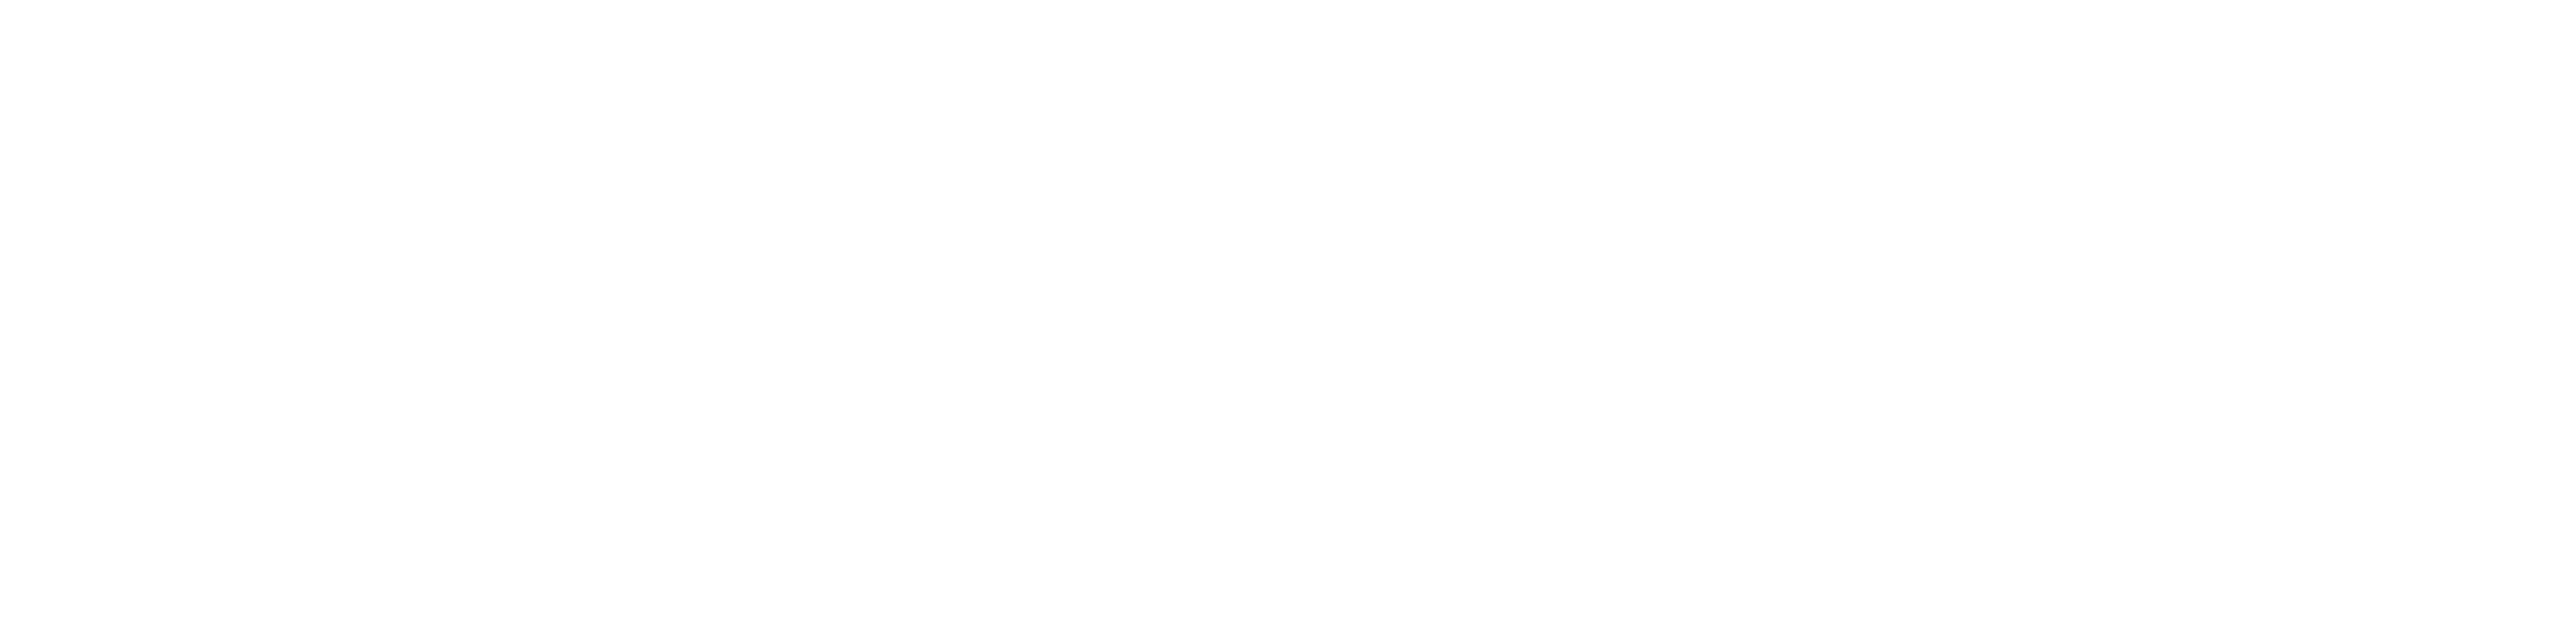 PX logo bianco-01